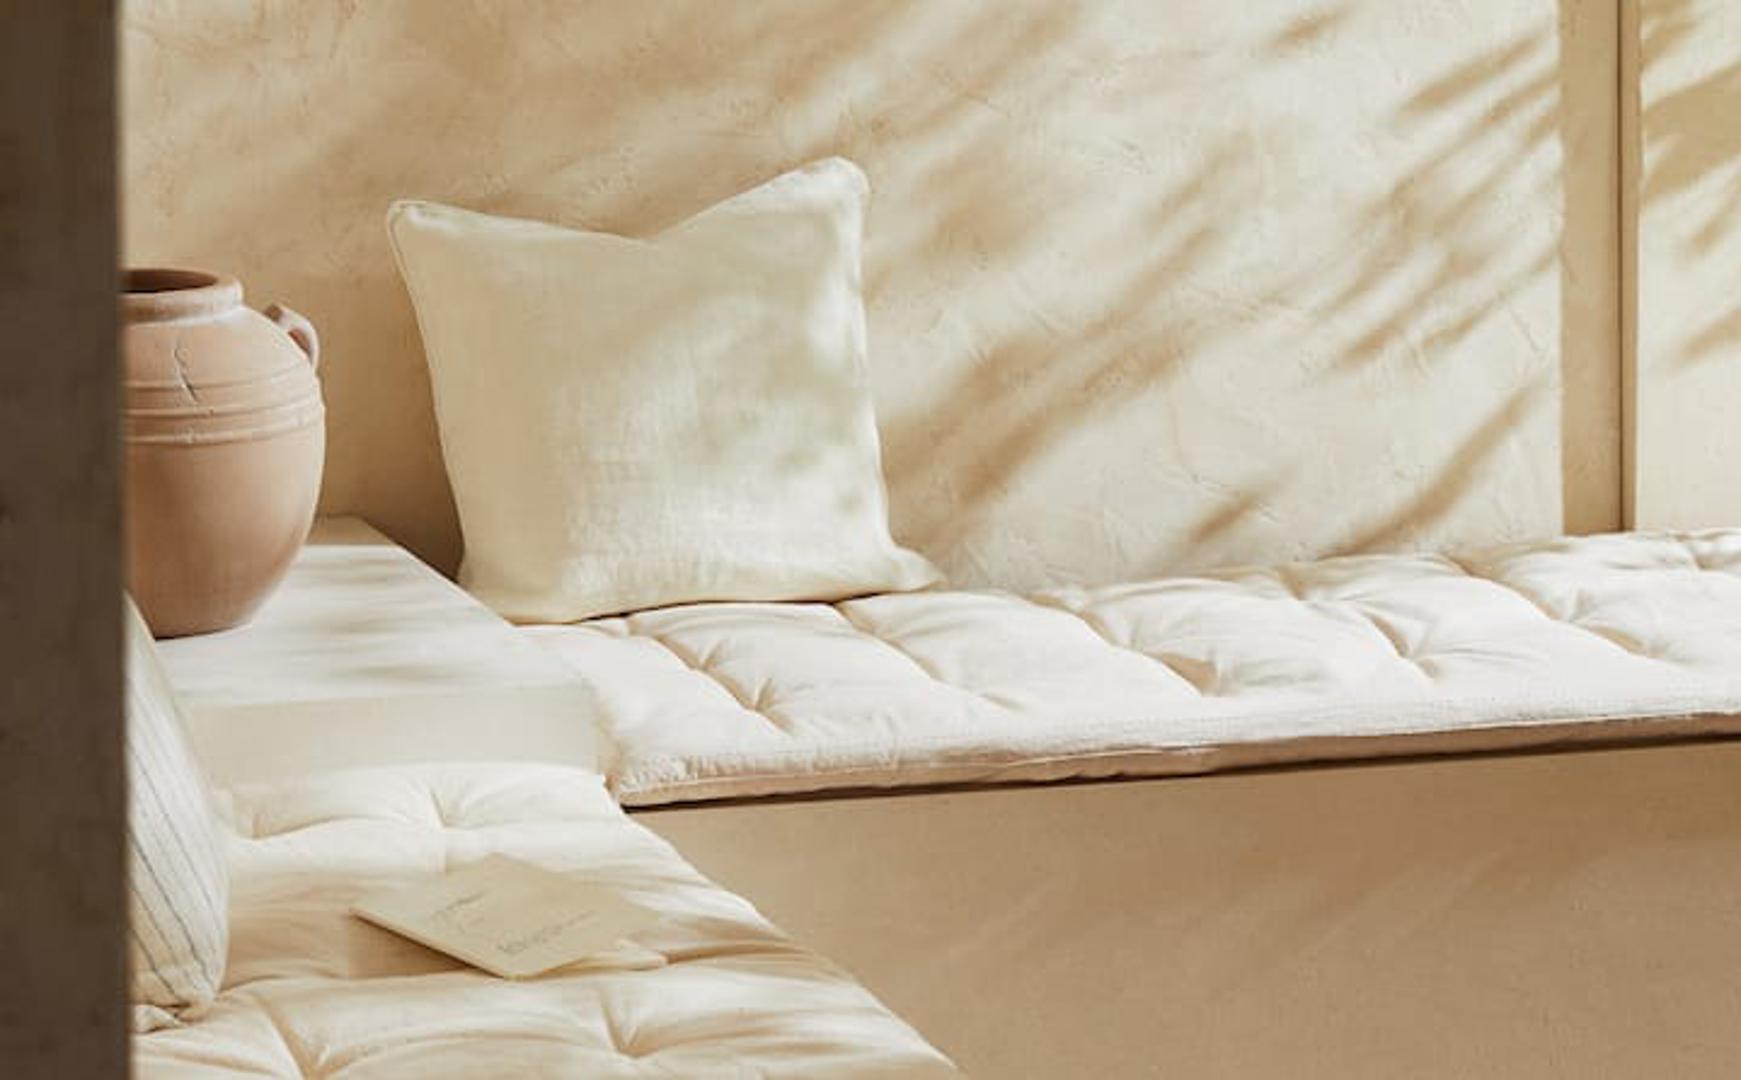 Iskoriste zid na najbolji mogući način - uložite u mekane jastuke i prostirke u neutralnom tonu